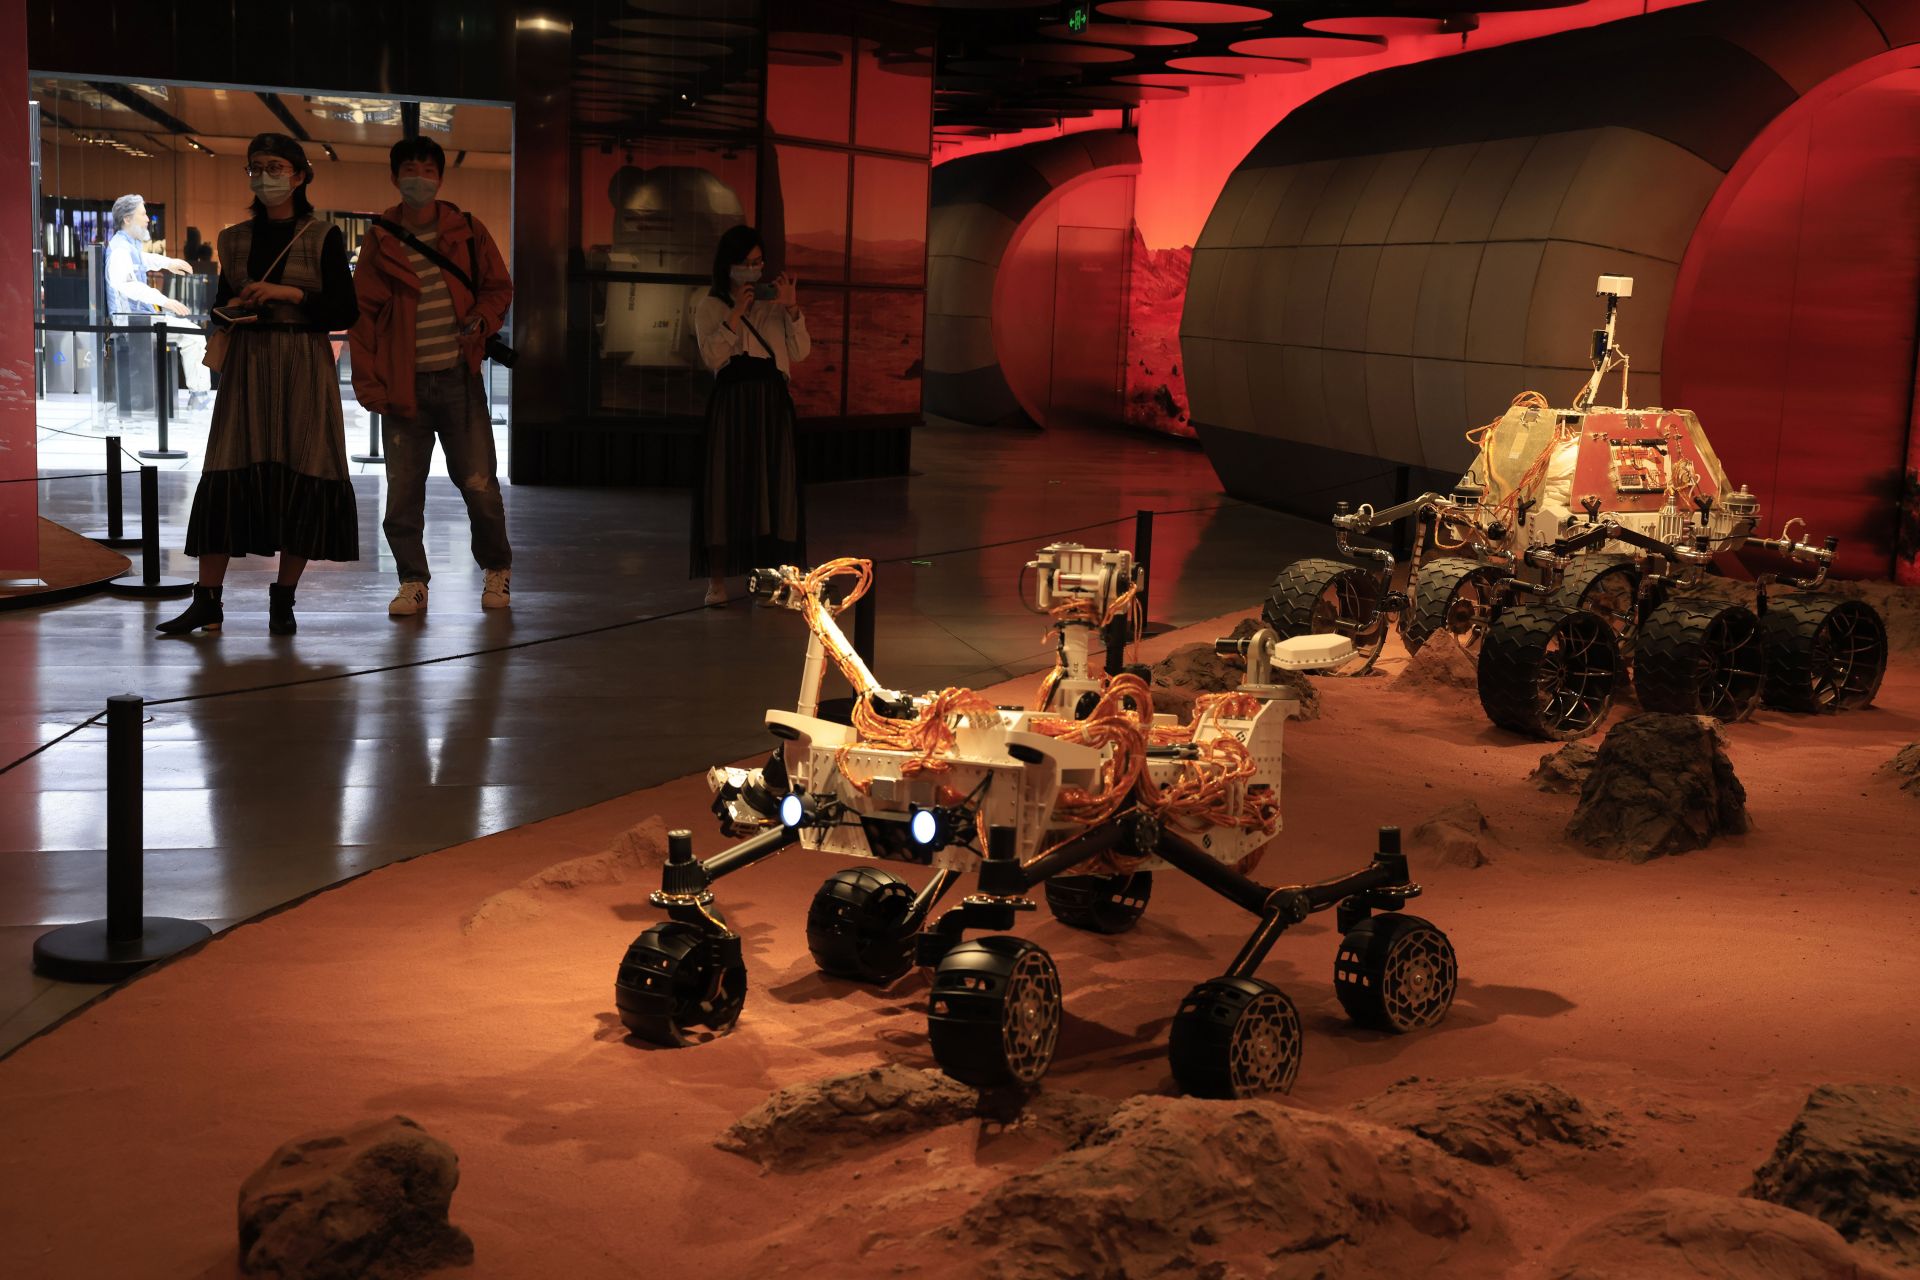 Посетителите минават покрай изложба с изображения на марсоходи на Марс в Пекин в петък, 14 май 